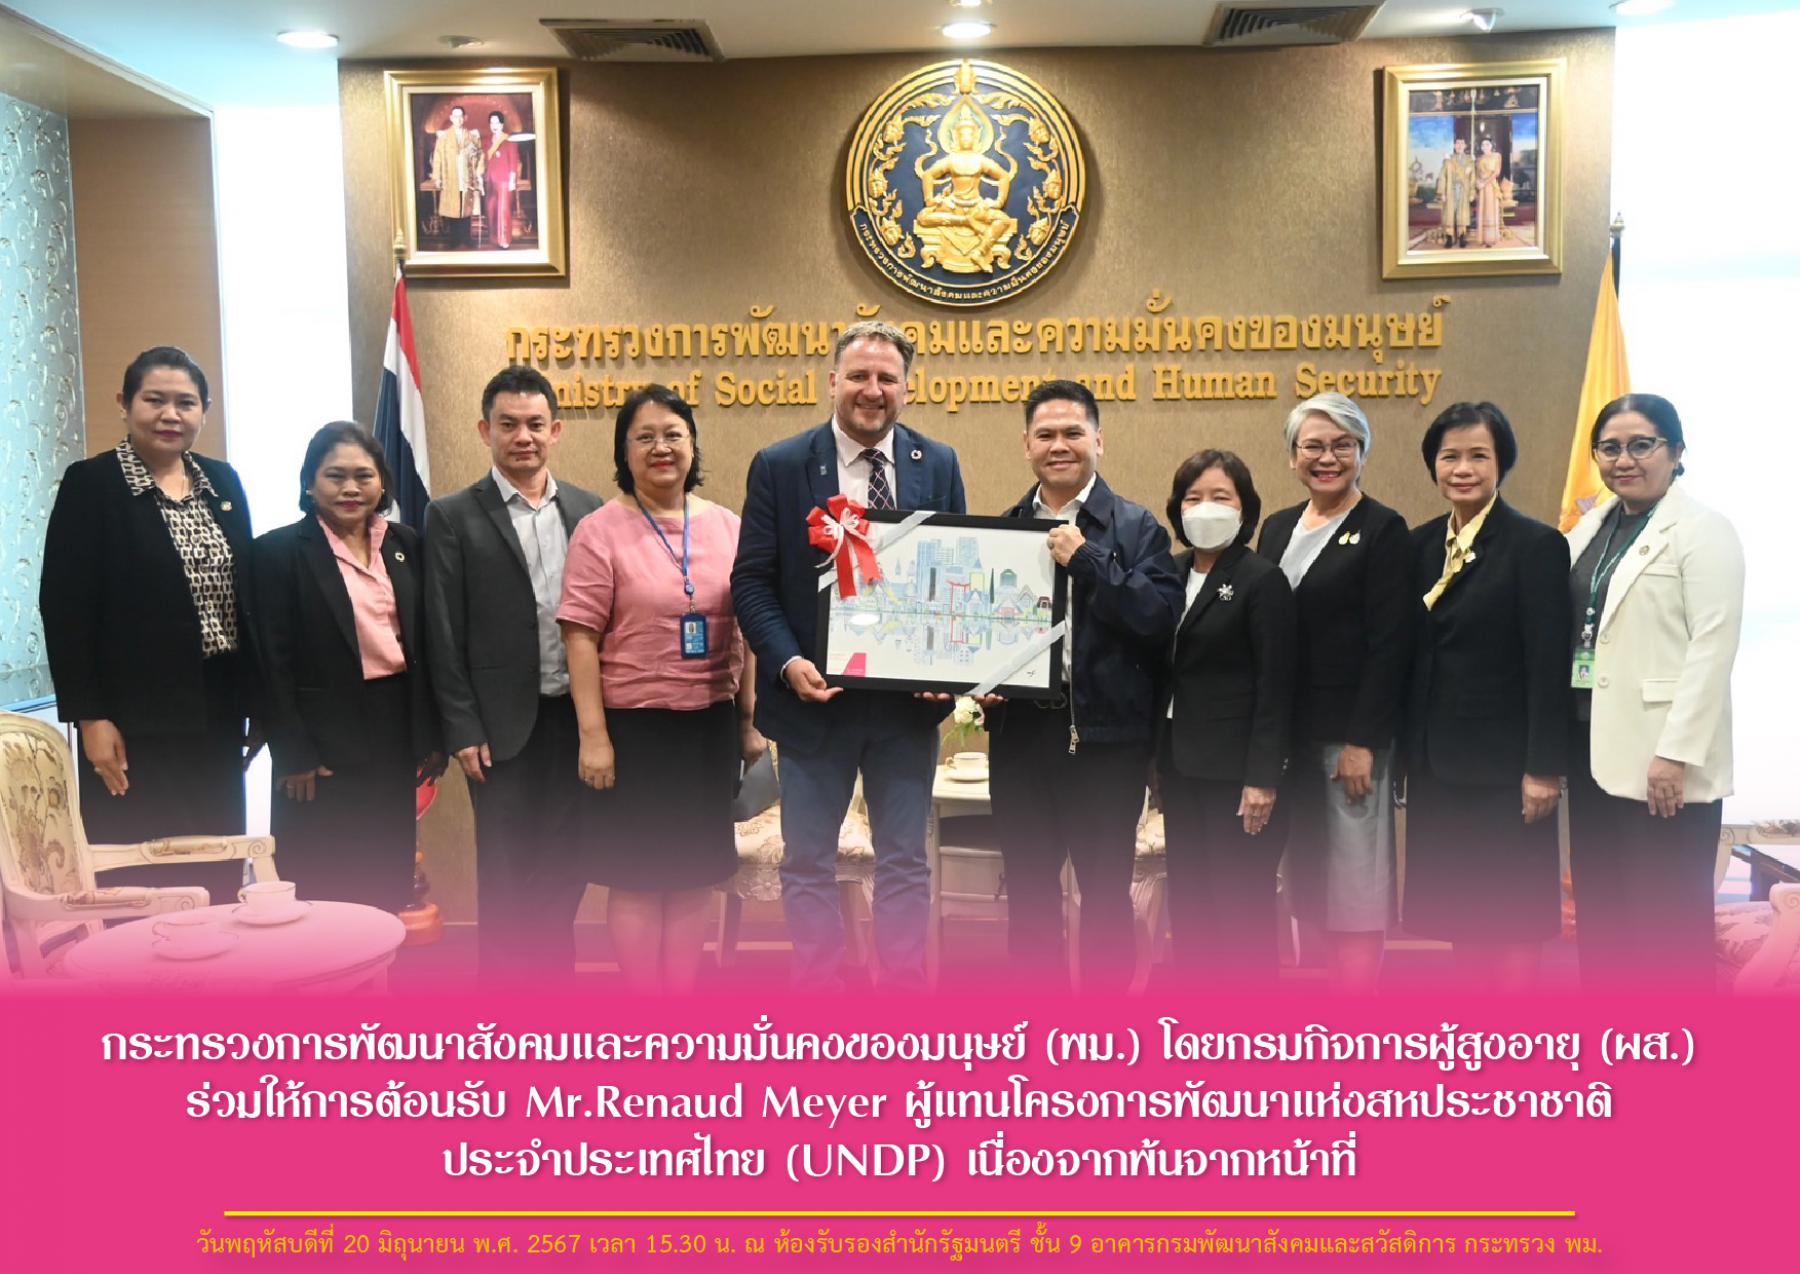 พม. โดยกรมกิจการผู้สูงอายุ (ผส.) ร่วมให้การต้อนรับ Mr.Renaud Meyer ผู้แทนโครงการพัฒนาแห่งสหประชาชาติประจำประเทศไทย (UNDP) เนื่องจากพ้นจากหน้าที่